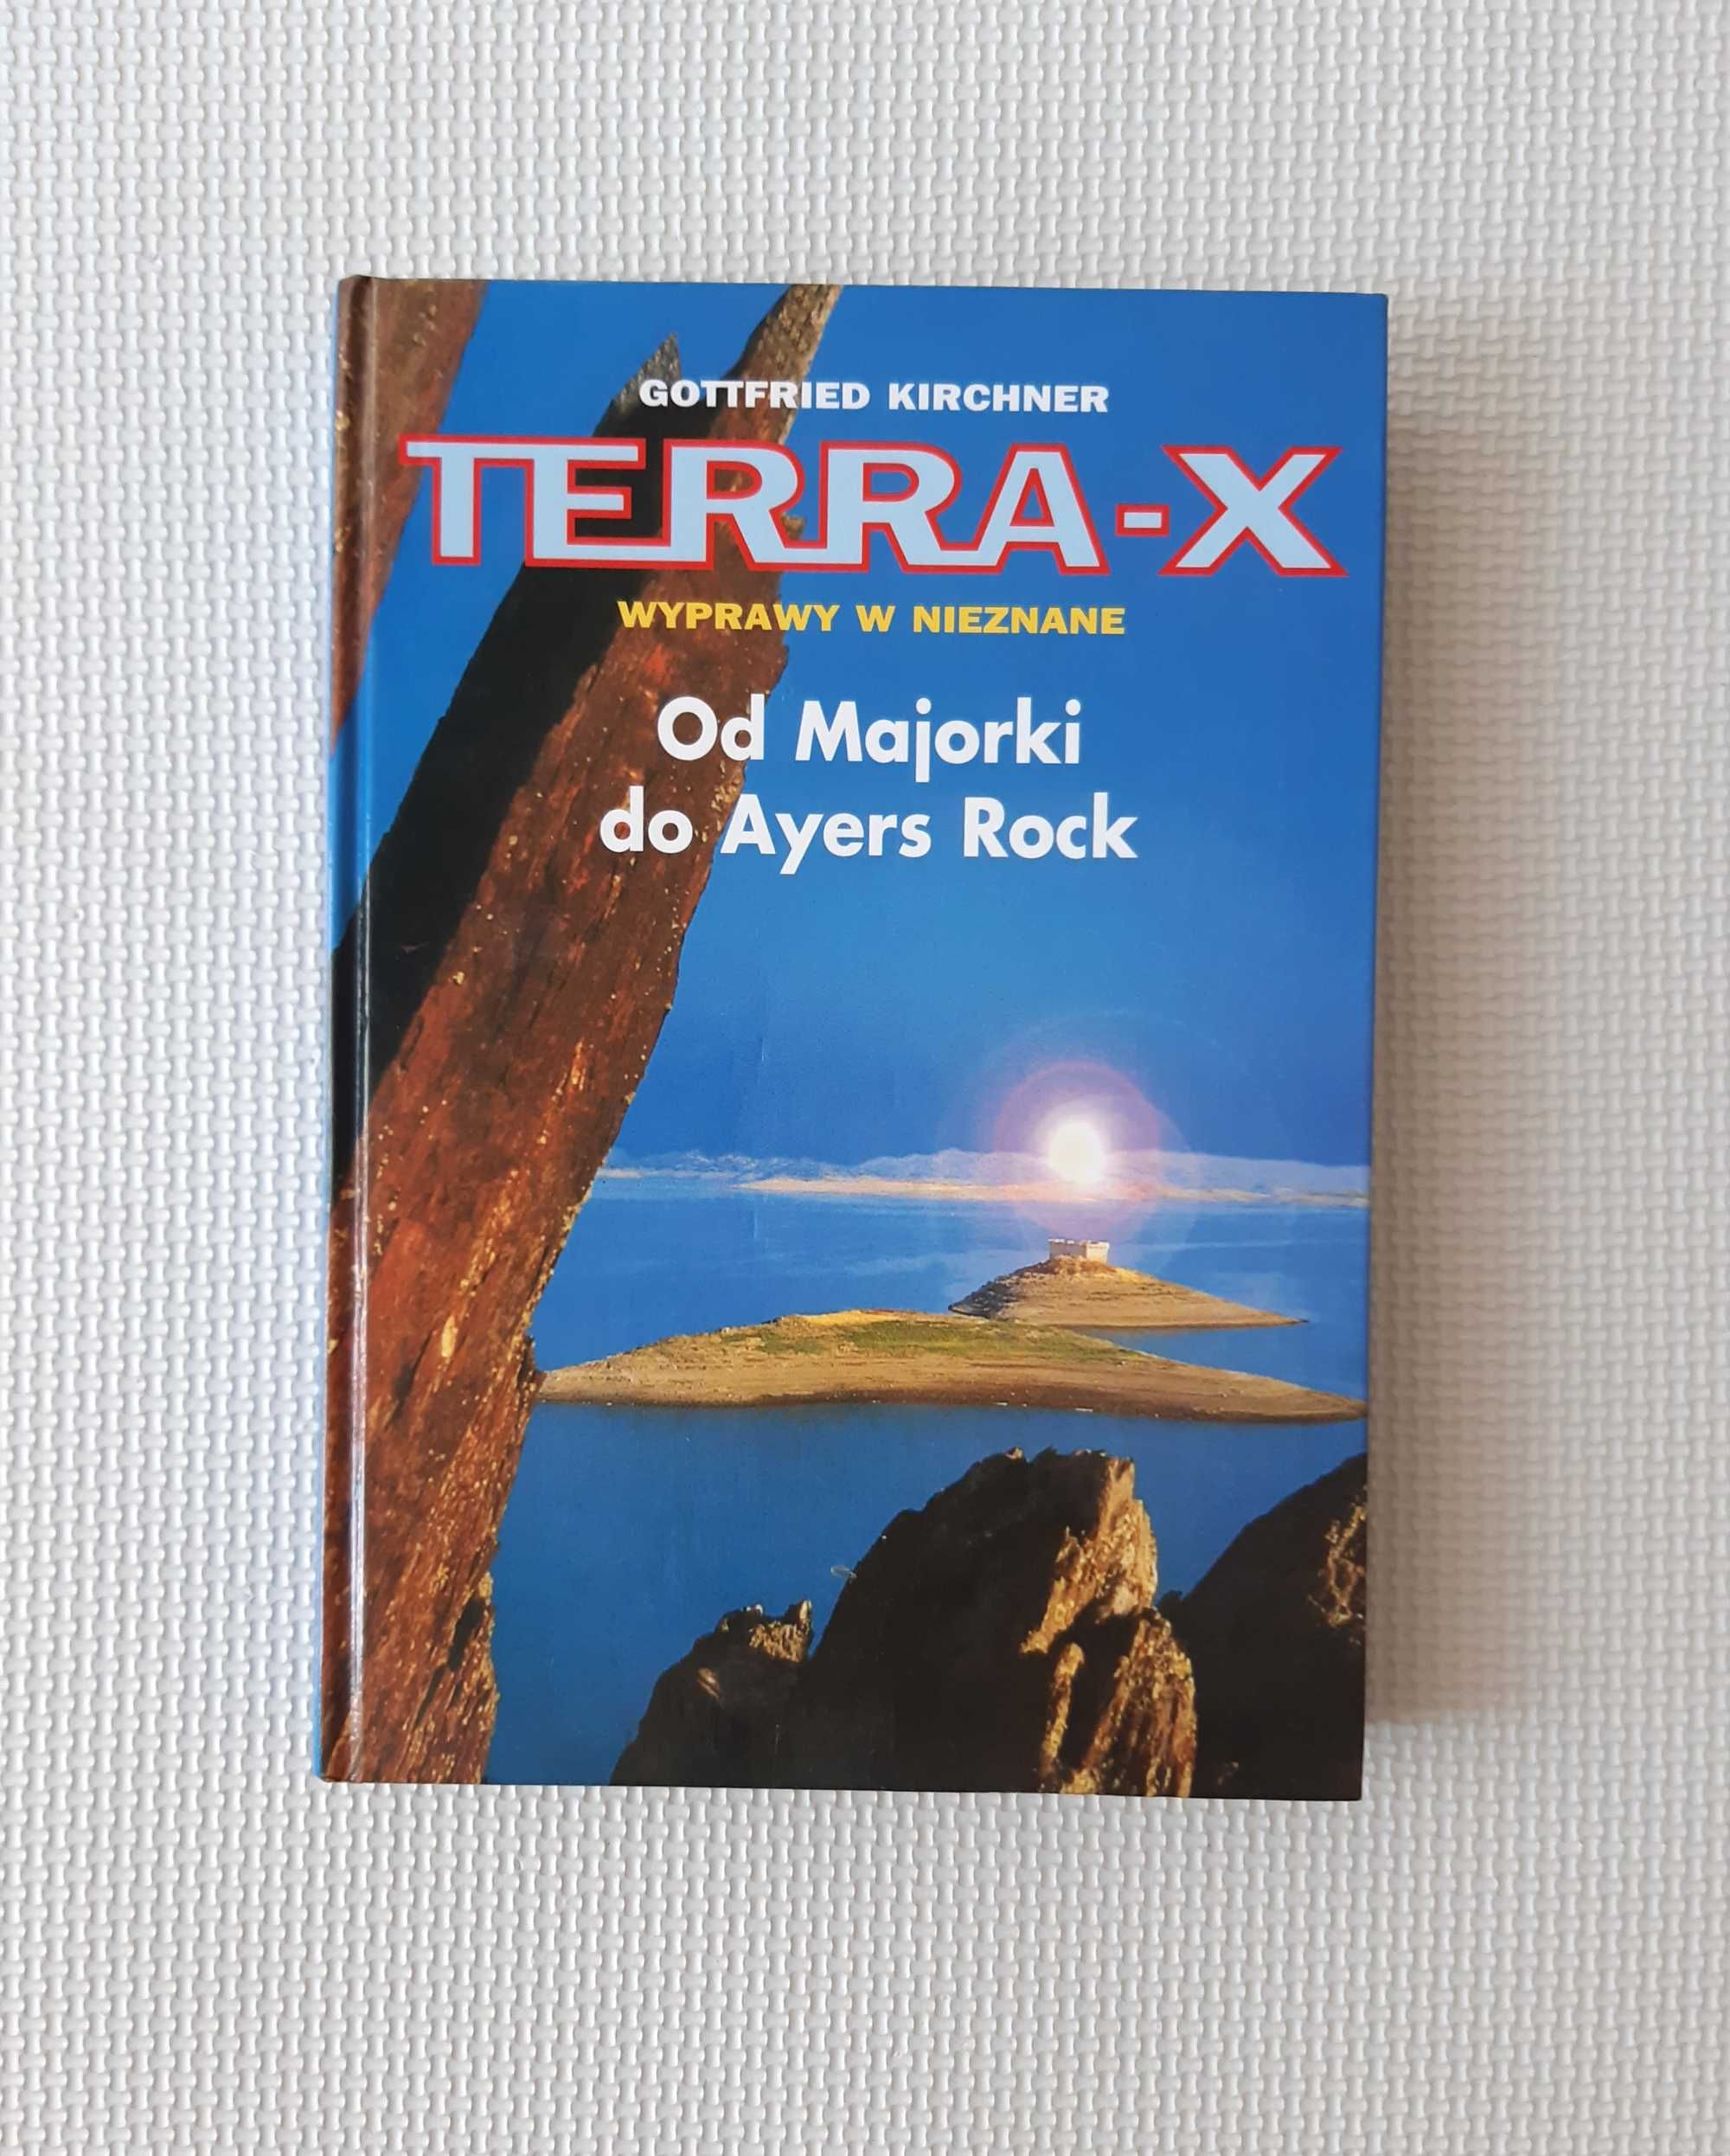 TERRA-X Wyprawy w nieznane Od Majorki do Ayers Rock Gottfried Kirchner